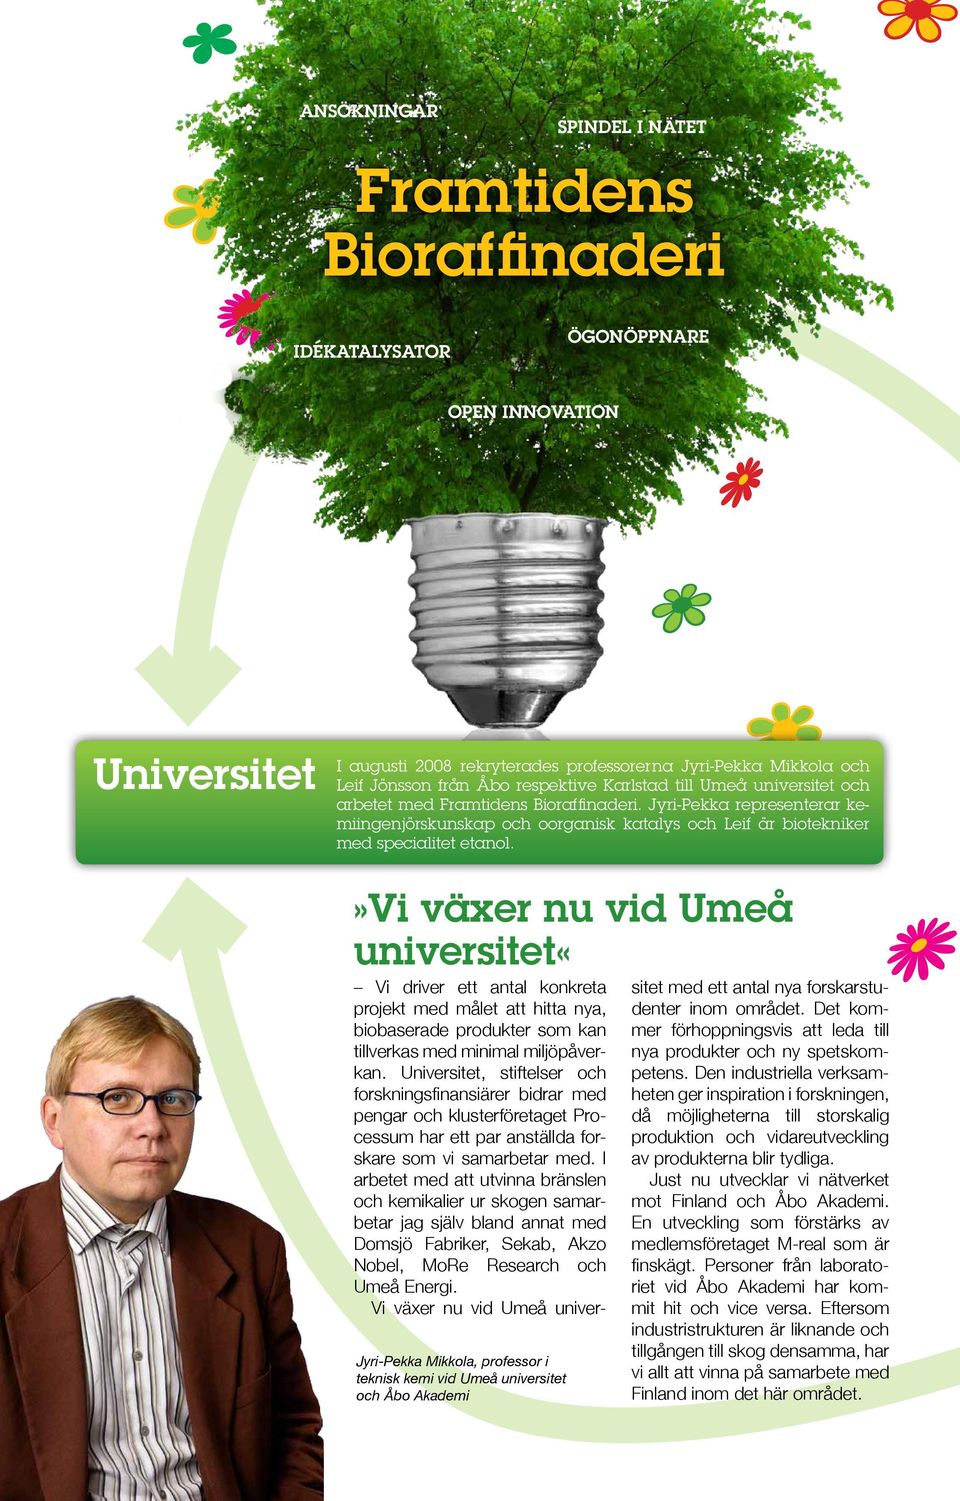 »vi växer nu vid Umeå universitet«vi driver ett antal konkreta projekt med målet att hitta nya, biobaserade produkter som kan tillverkas med minimal miljöpåverkan.